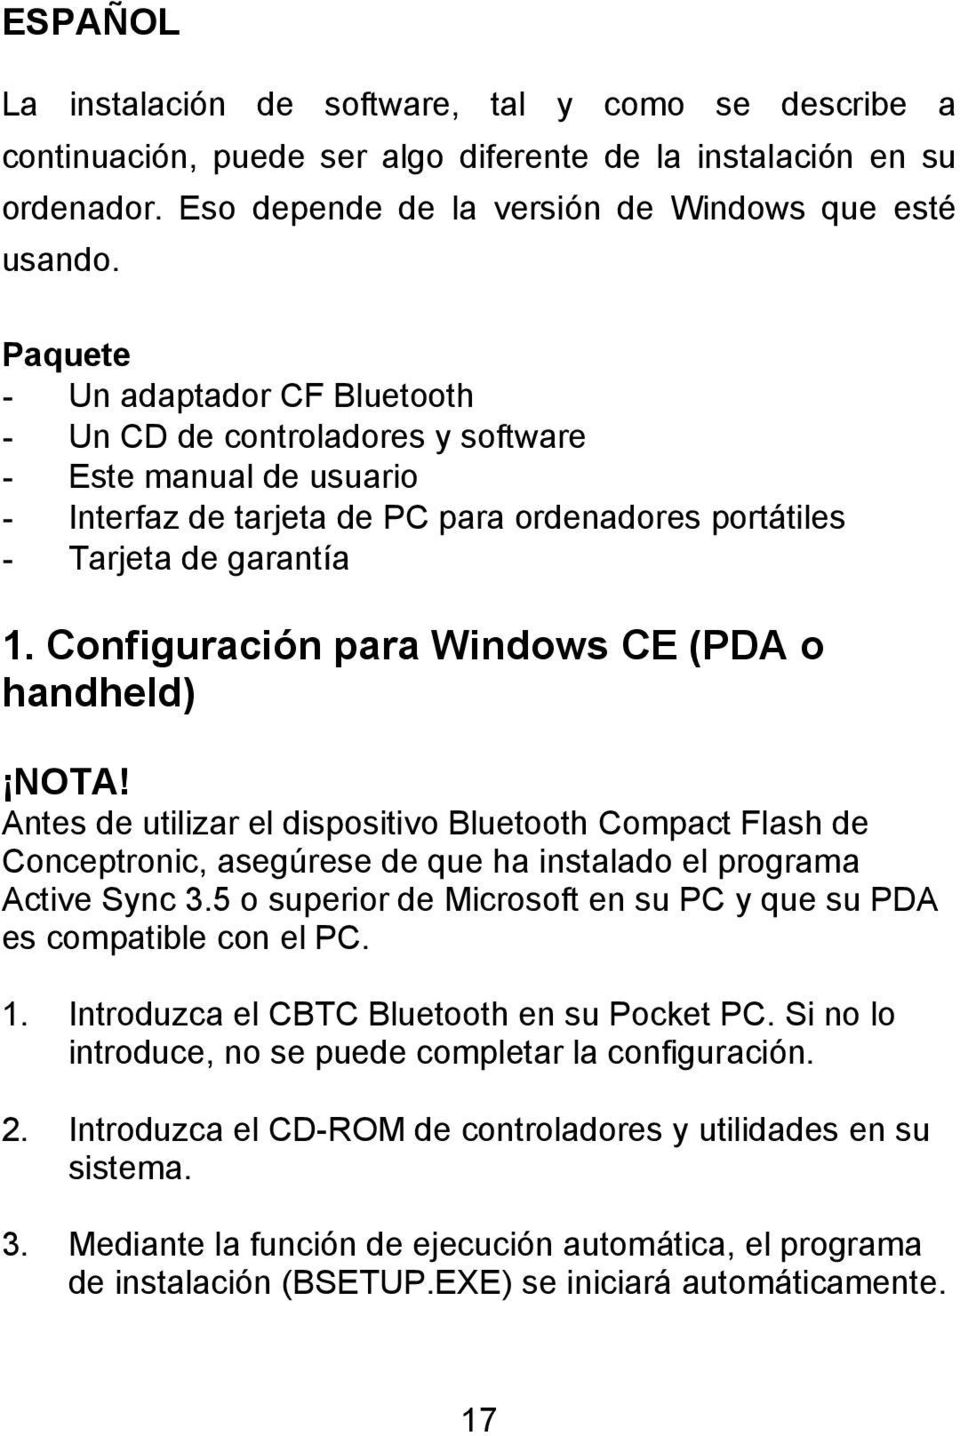 Configuración para Windows CE (PDA o handheld) NOTA! Antes de utilizar el dispositivo Bluetooth Compact Flash de Conceptronic, asegúrese de que ha instalado el programa Active Sync 3.